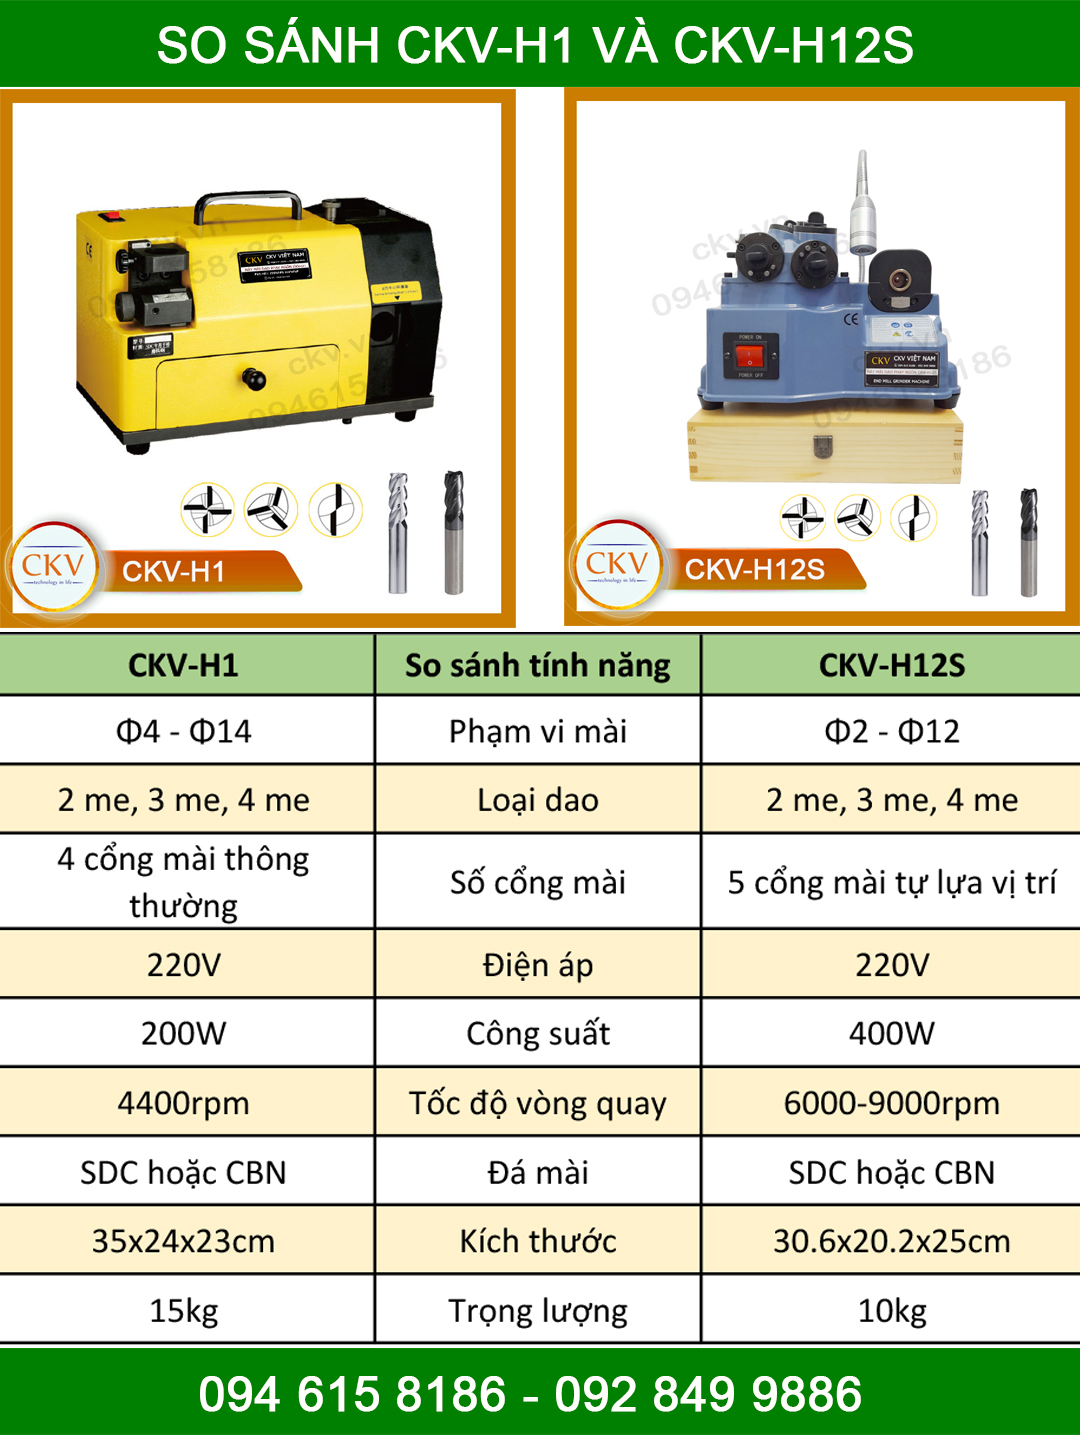 So sánh CKV-H1 và CKV-H12S